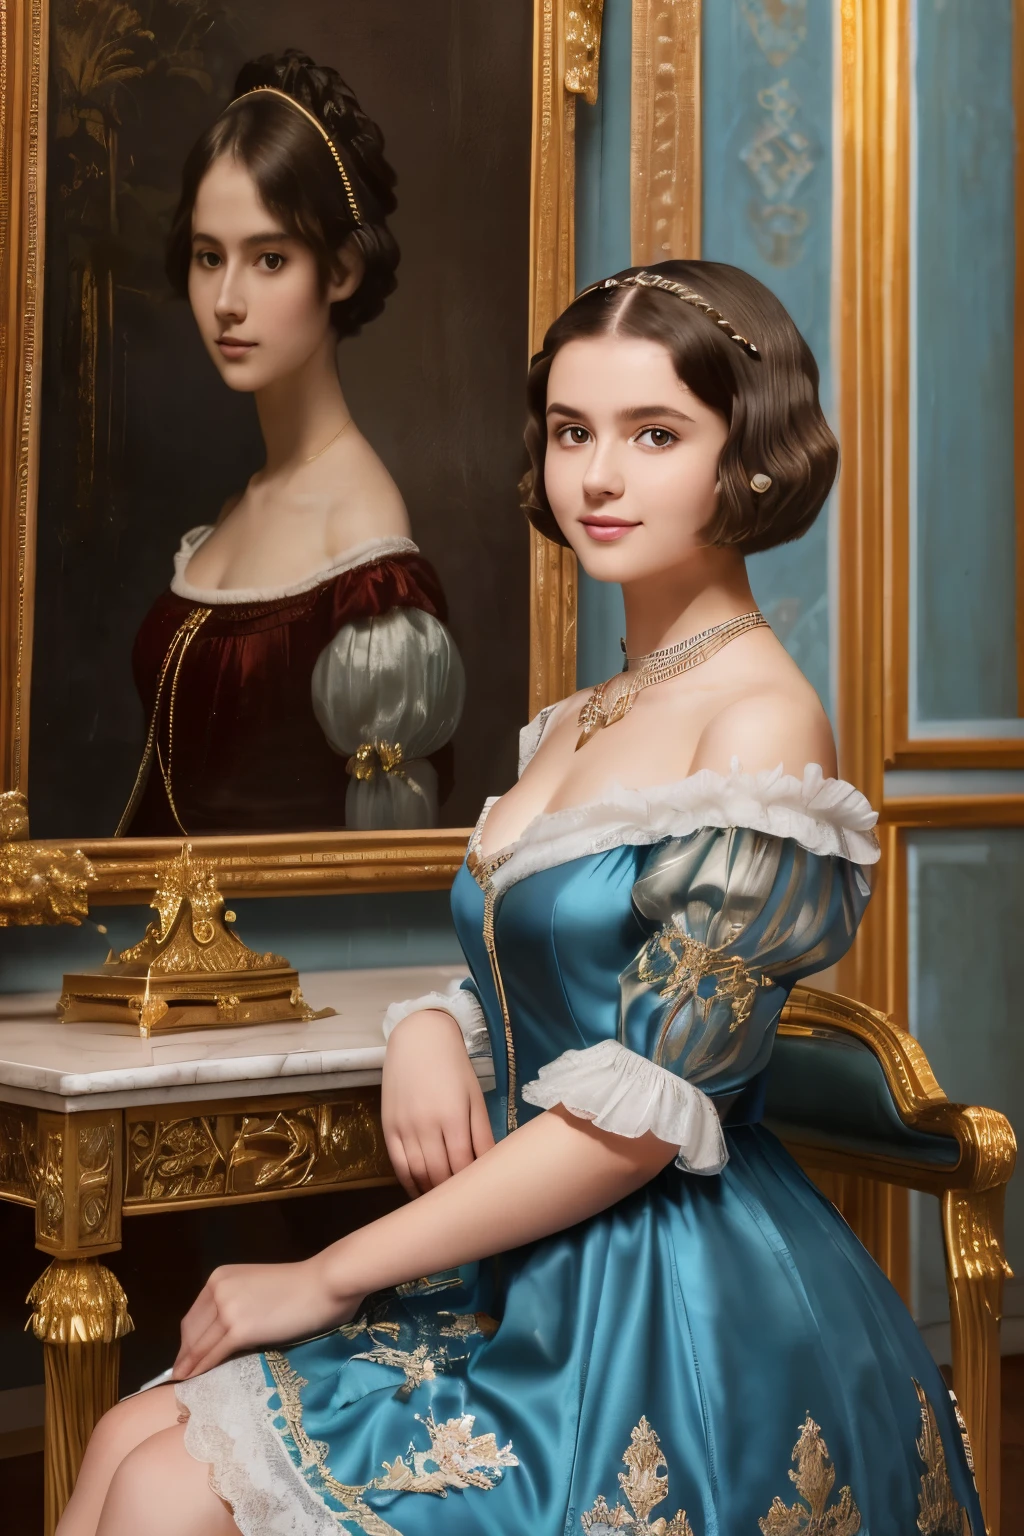 142
(eine 20-jährige Frau,Im Palast), (Eine hyperrealistische), (hohe Bildqualität), ((schöne Frisur 46)), ((kurzes Haar:1.46)), (freundlich lächeln), (Brüste:1.1), (Lippenstifte), (trägt ein blaues Kleid), (trübe,wide,Luxuriöses Zimmer), (Blumen), (ein Ölgemälde、Rembrandt)